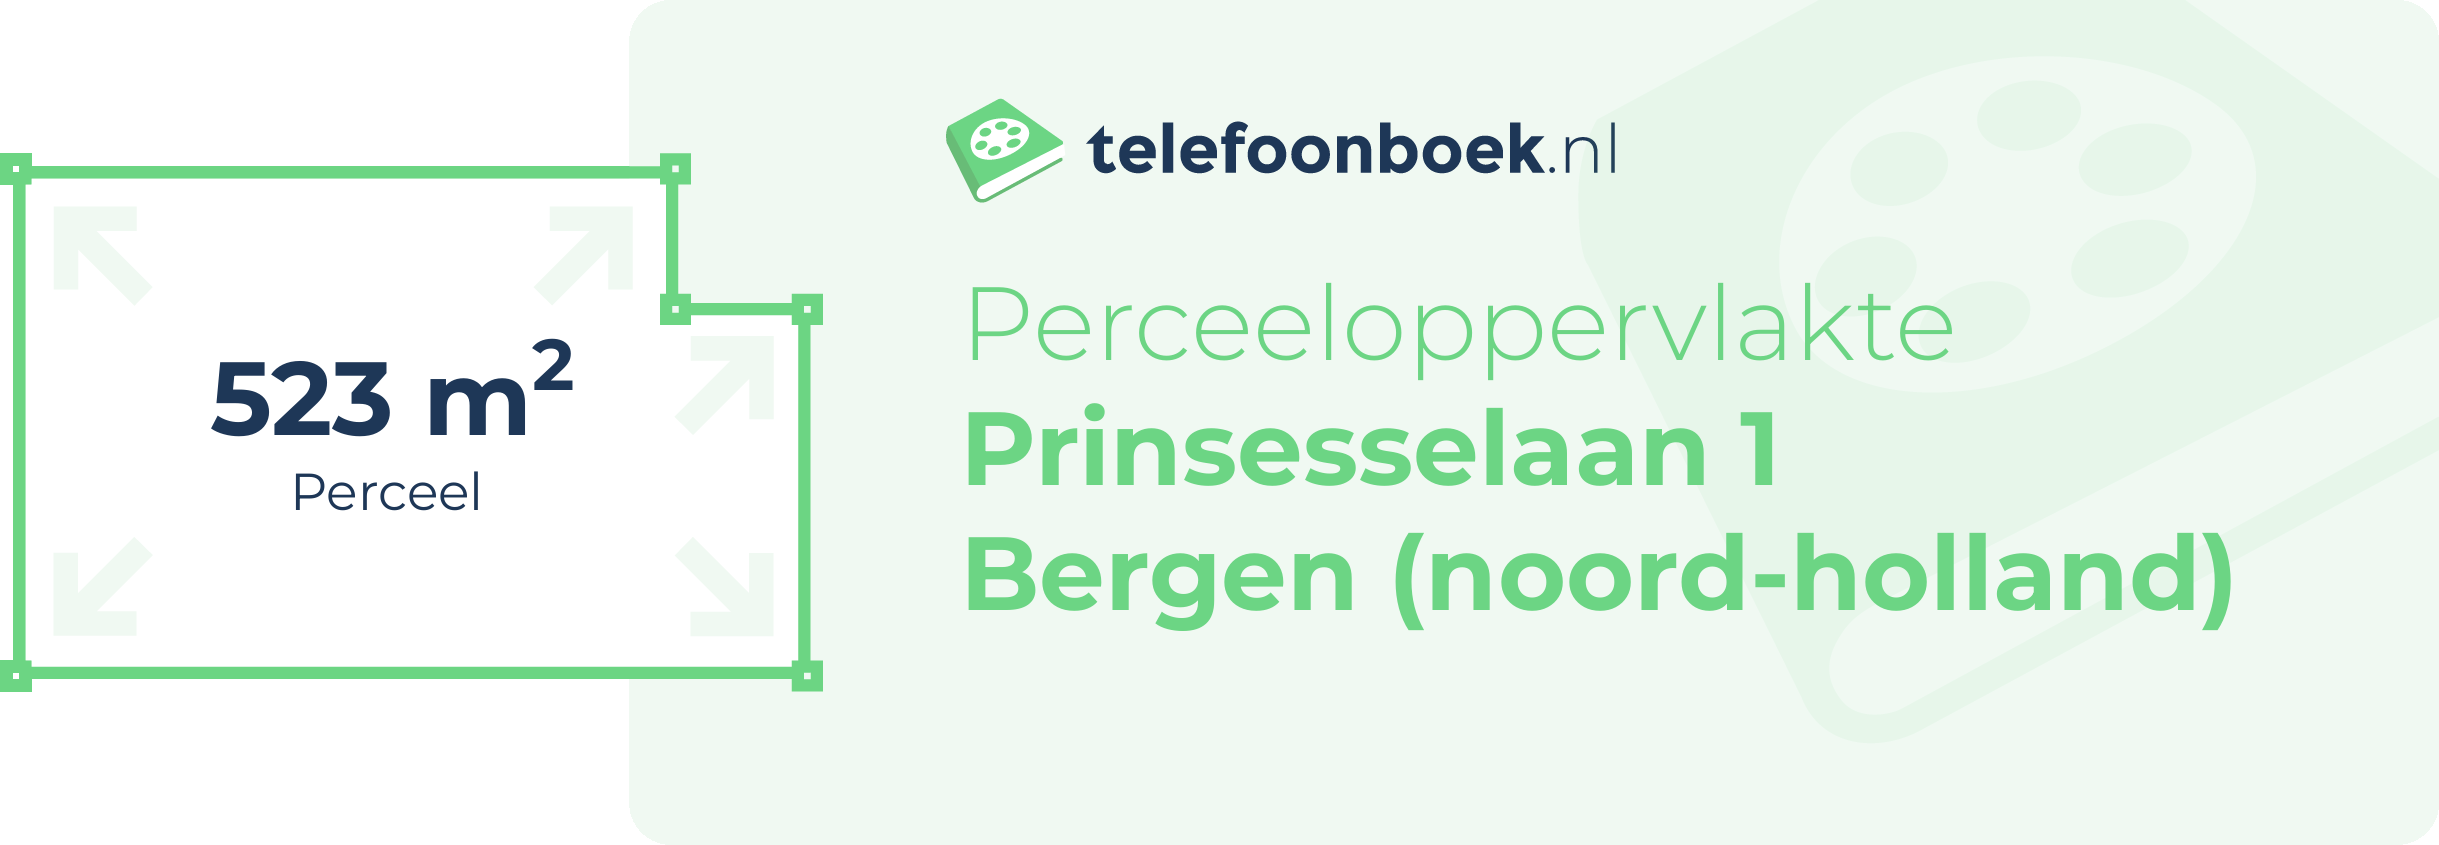 Perceeloppervlakte Prinsesselaan 1 Bergen (Noord-Holland)